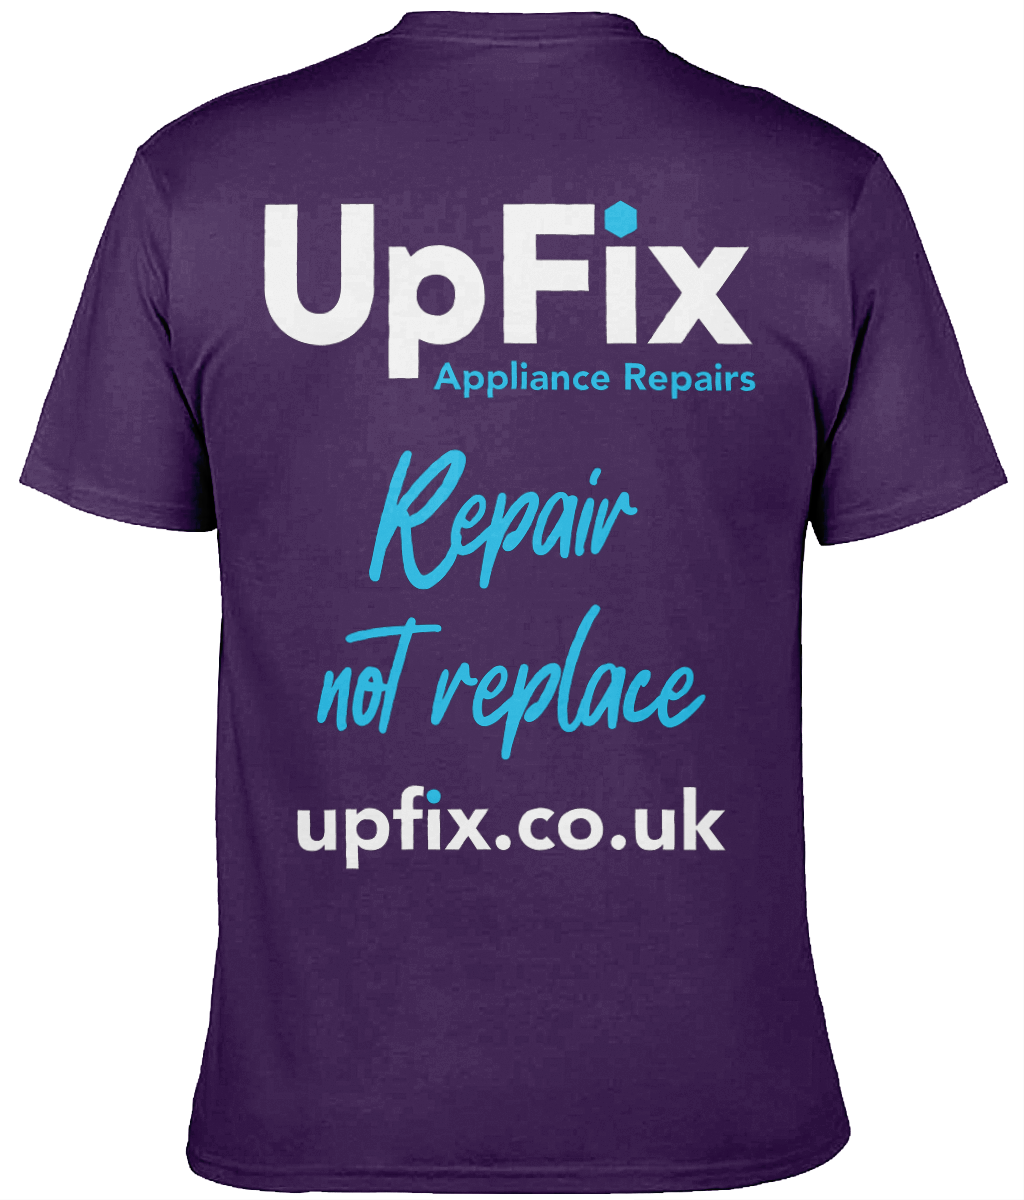 Upfix - Branded teeshirt - 3XL plus